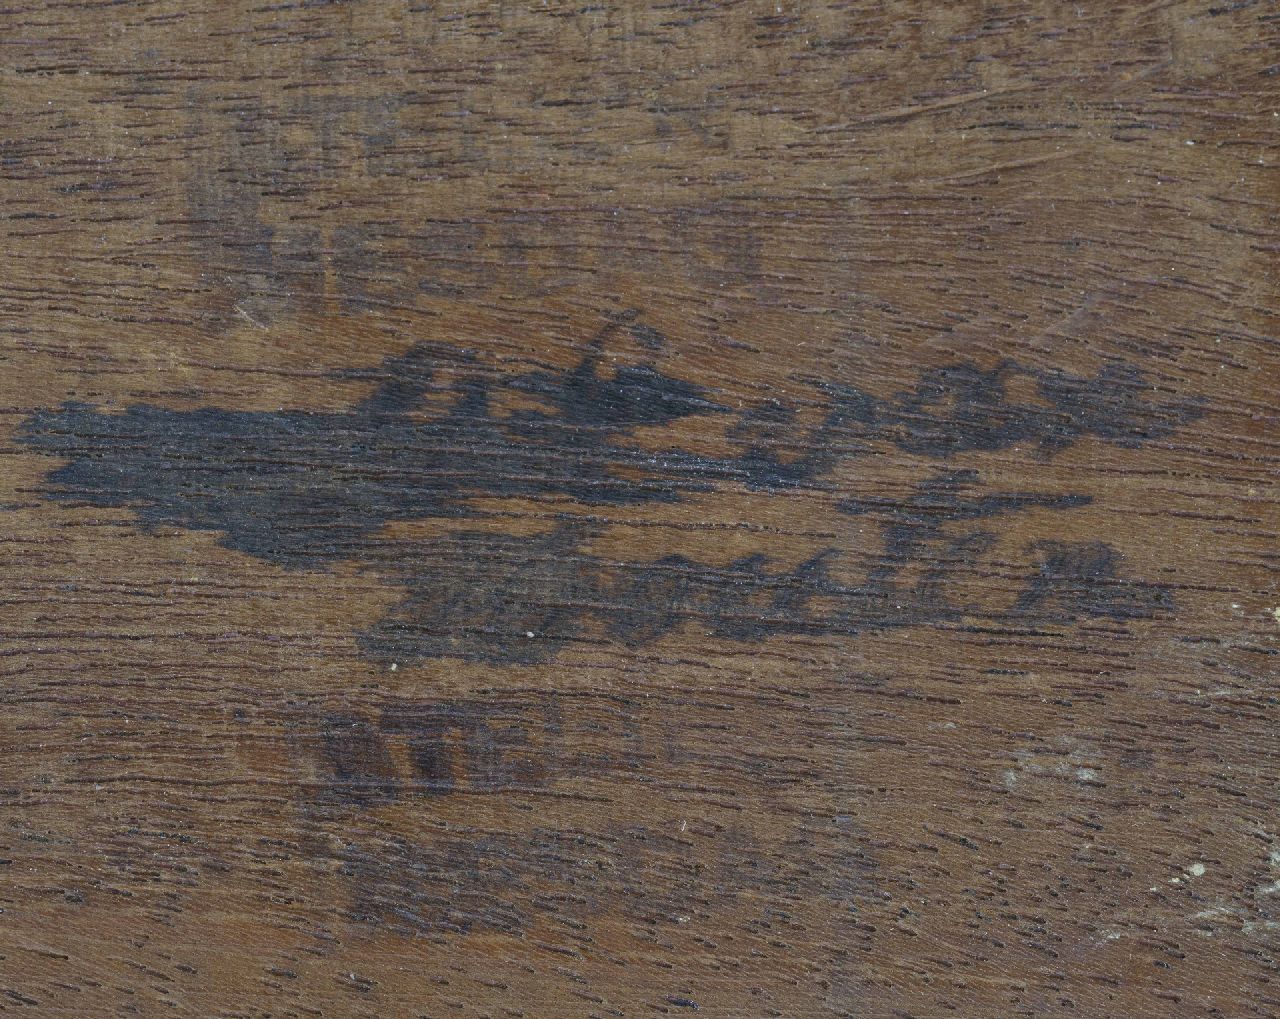 Hendrik Willem Mesdag Signaturen Das Atelier von Sientje Mesdag-van Houten